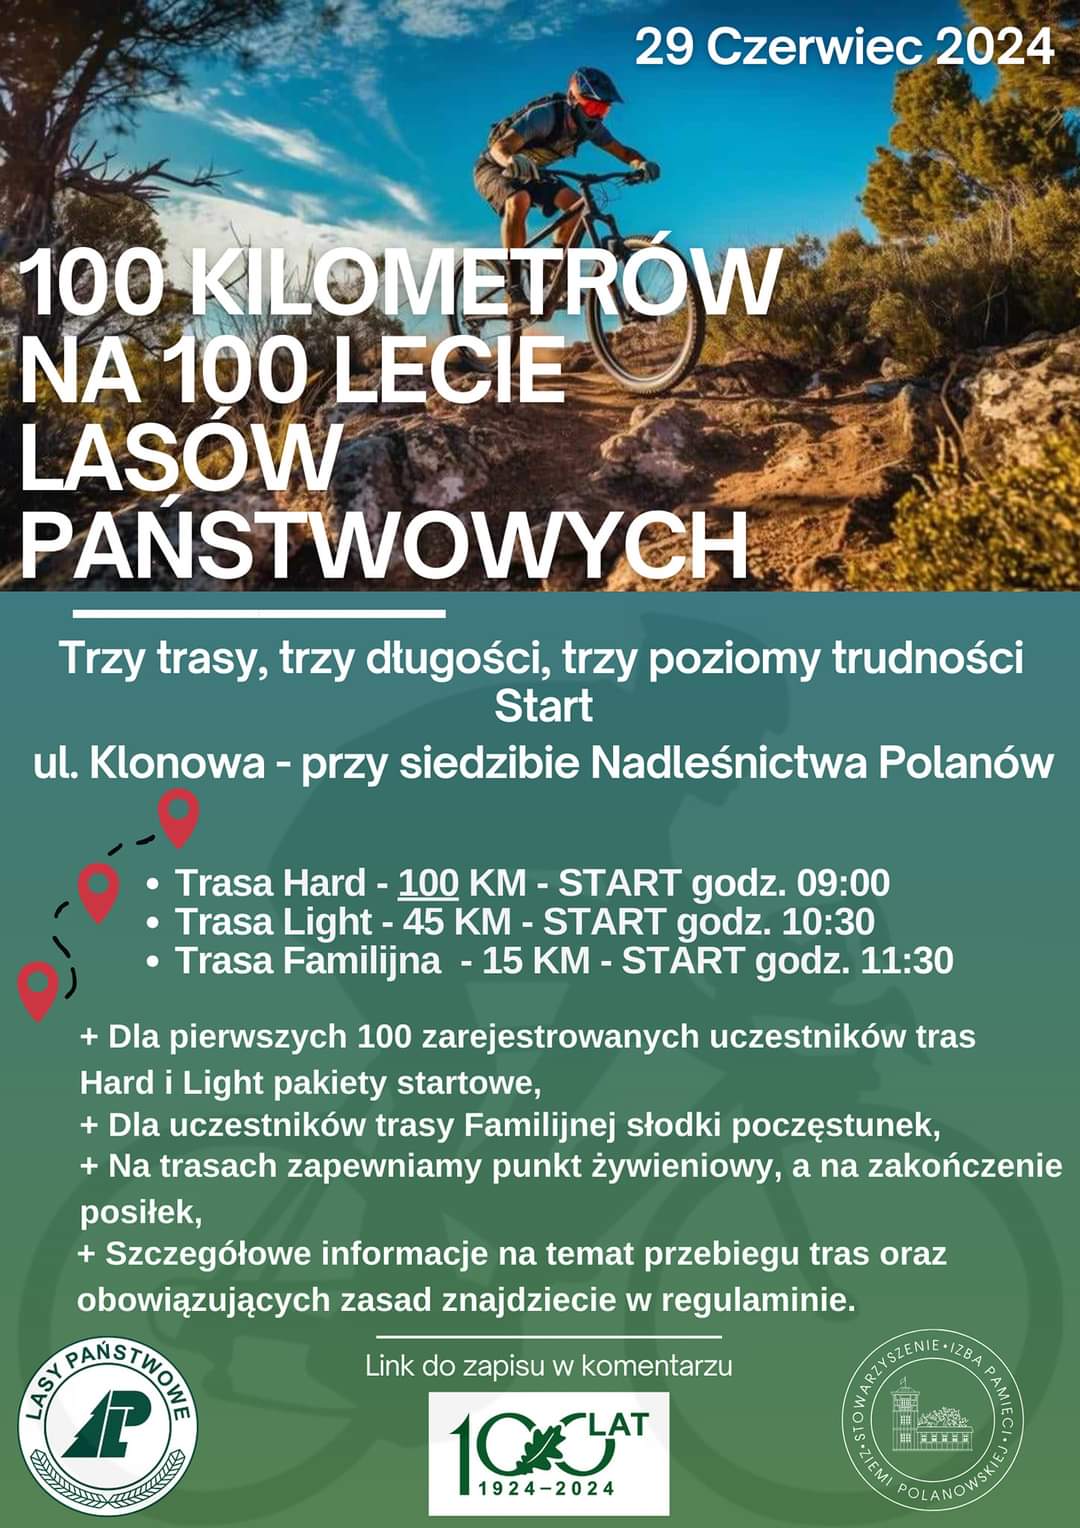 Plakat z zaproszeniem na rajd rowerowy w Polanowie 29 czerwiec 2024